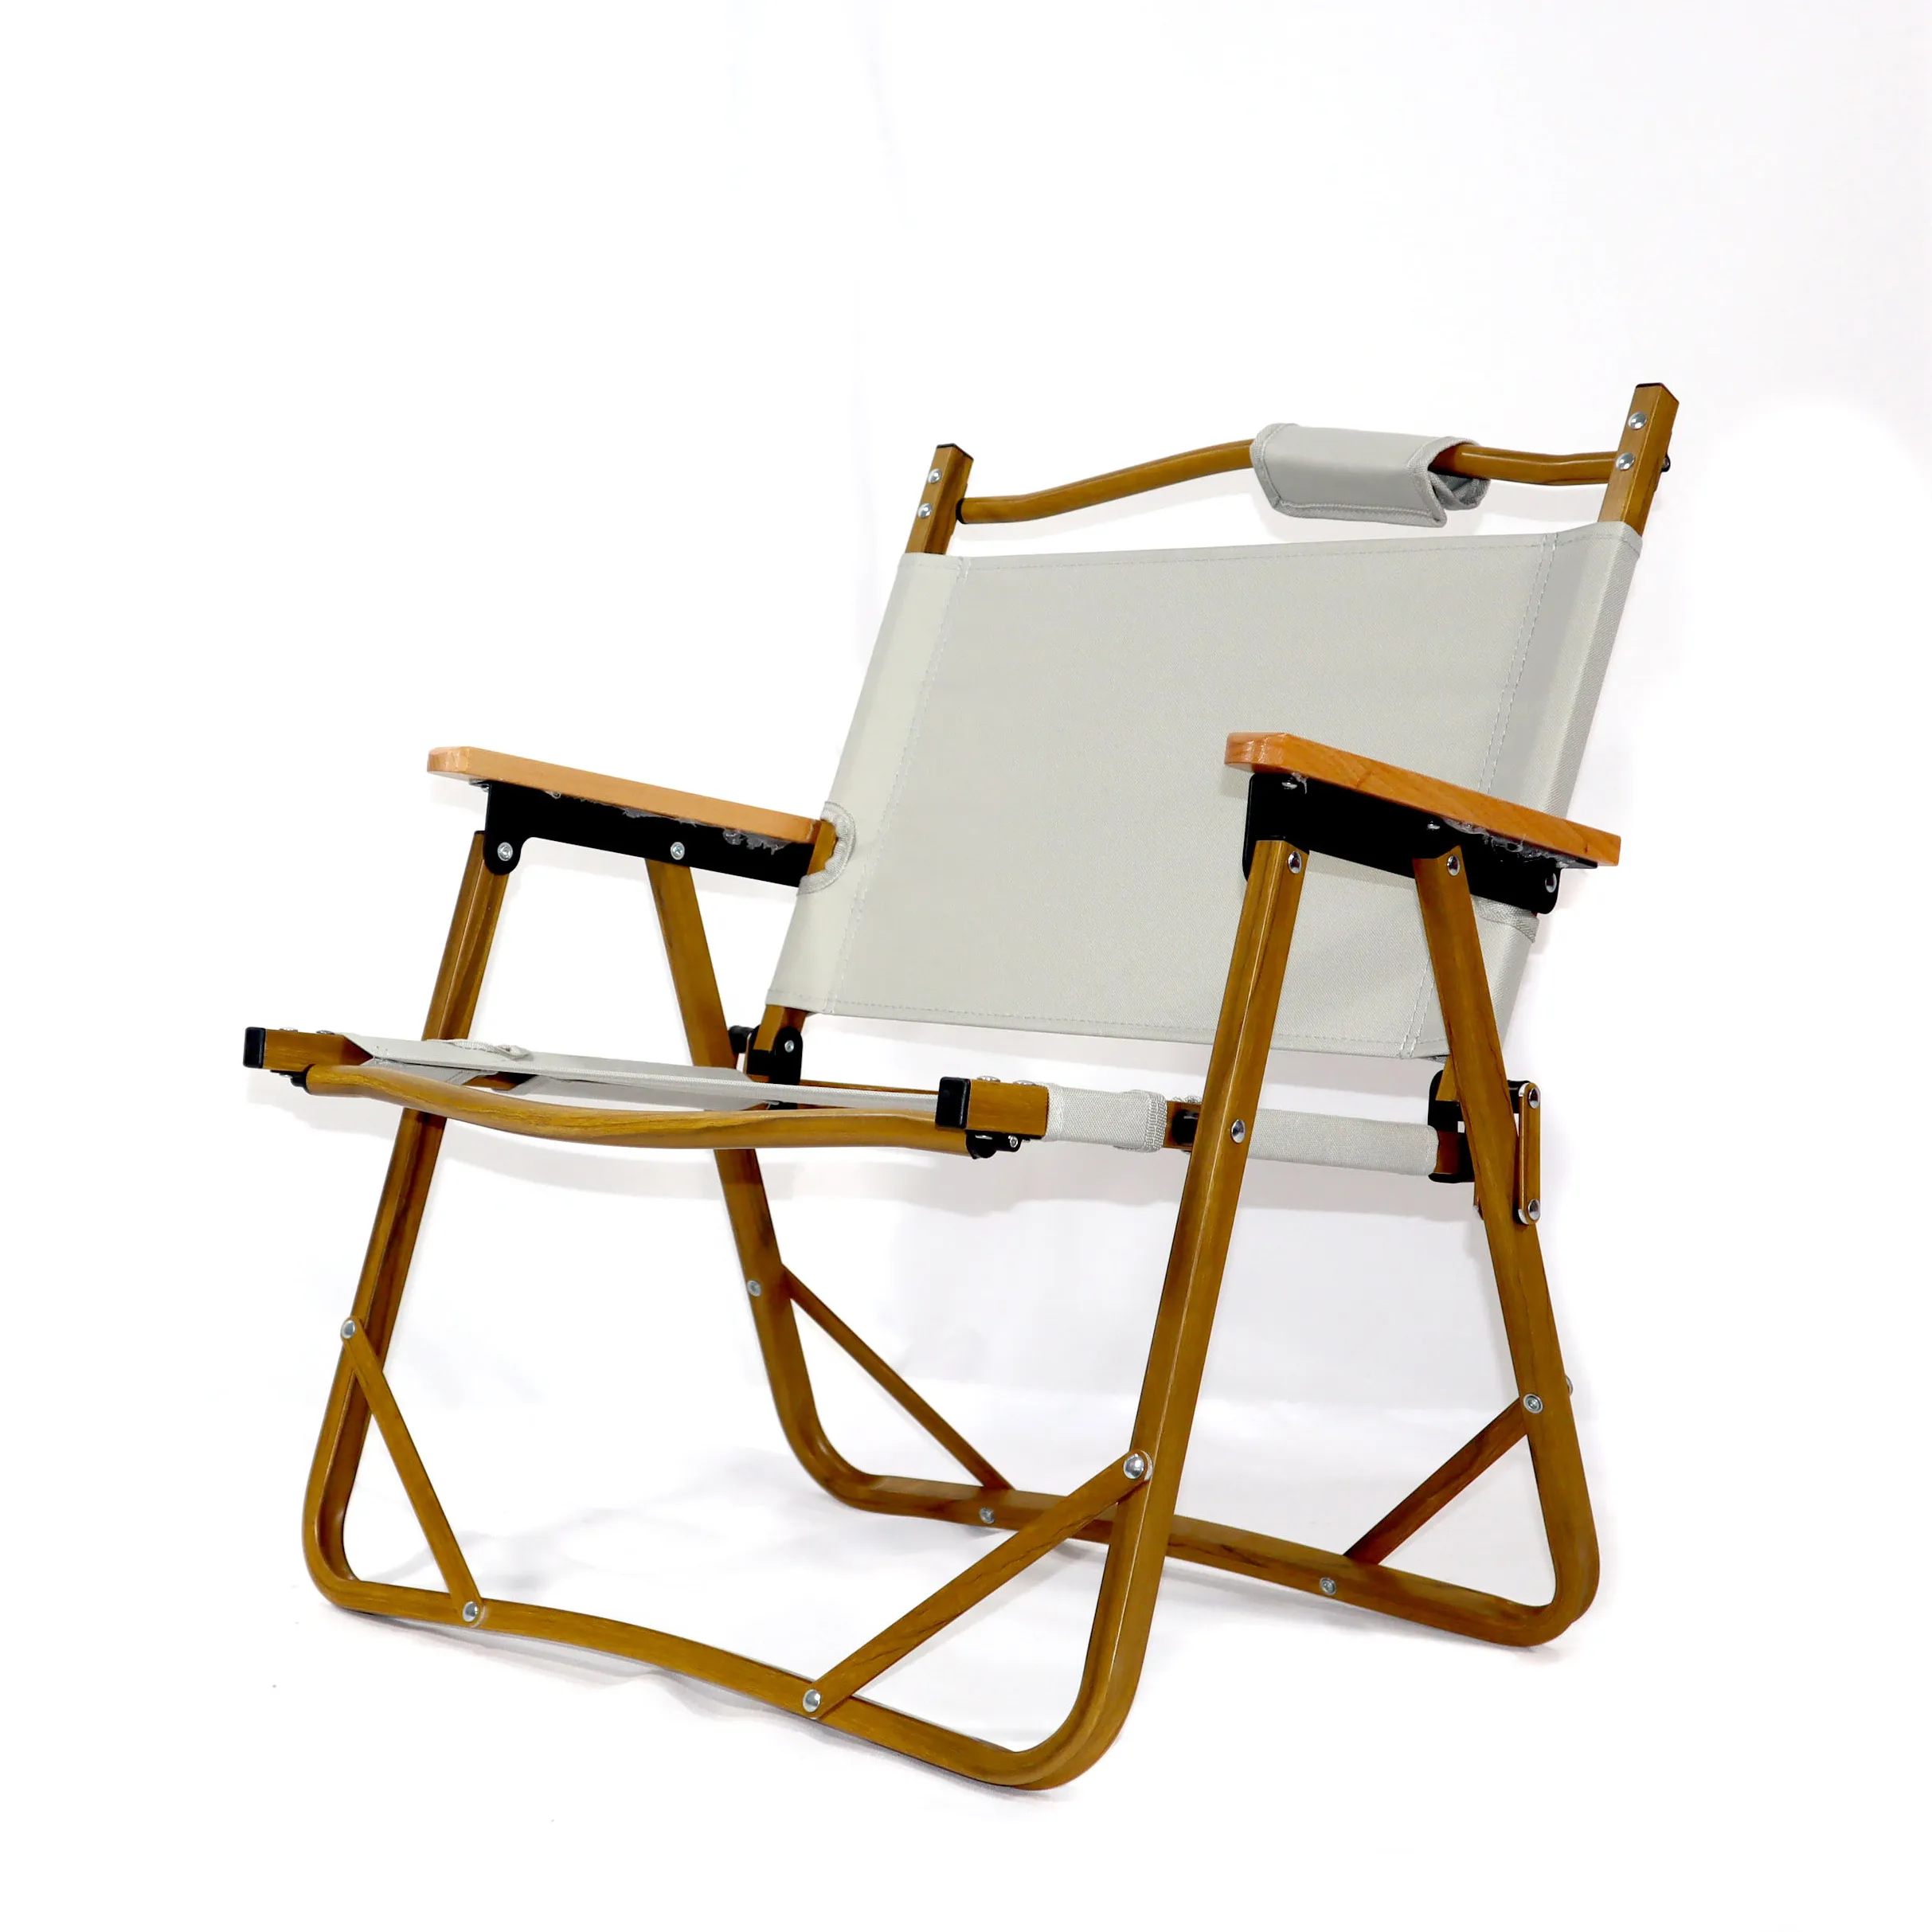 Mesa y sillas plegables de aluminio, diseño moderno, portátil, para acampar